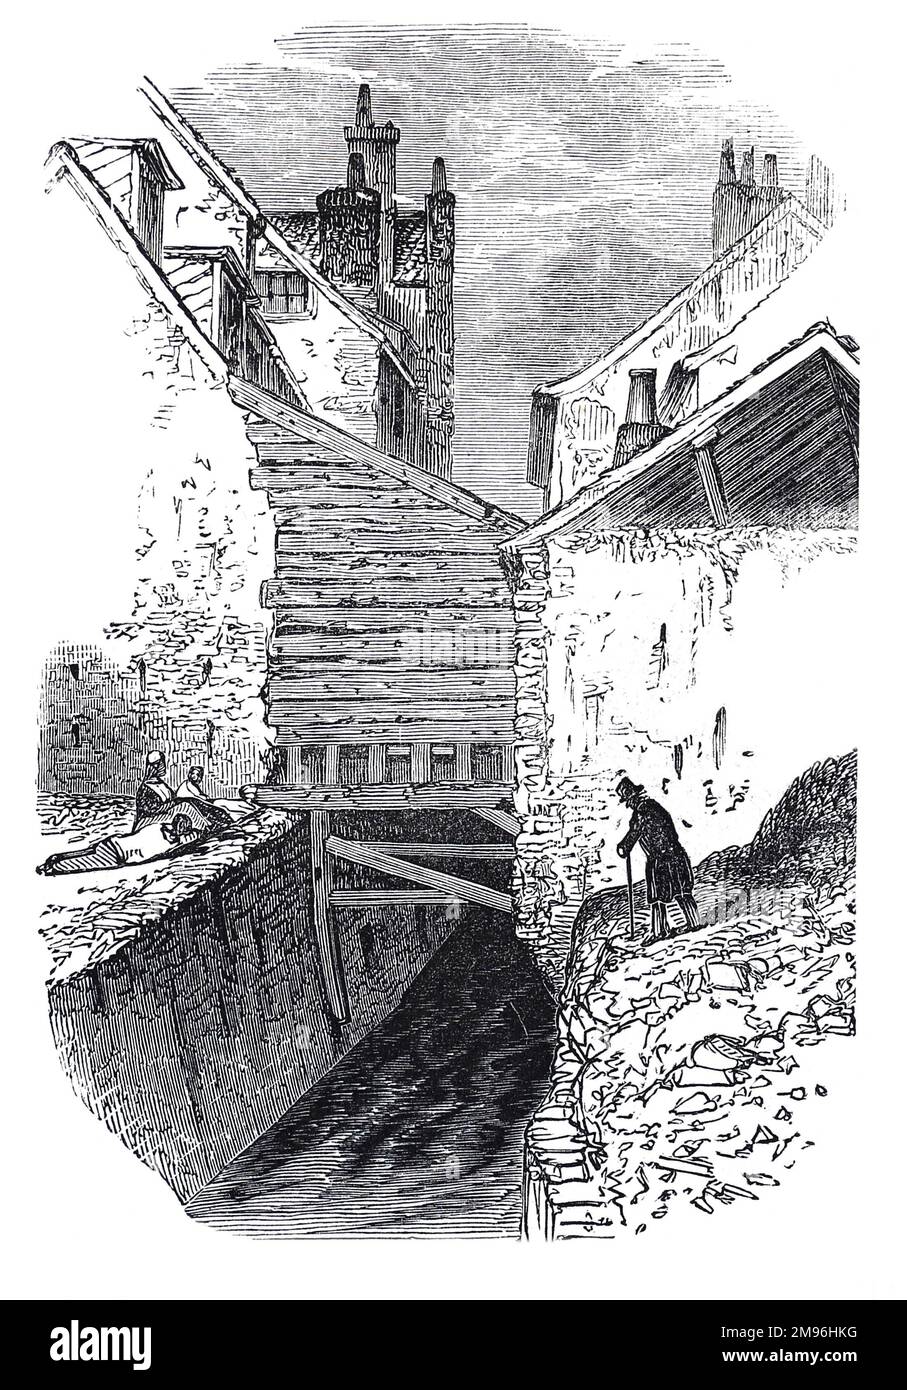 Vivienda antigua en Clerkenwell, Londres. Ilustración en blanco y negro del London Illustrated News; agosto de 1844. Foto de stock